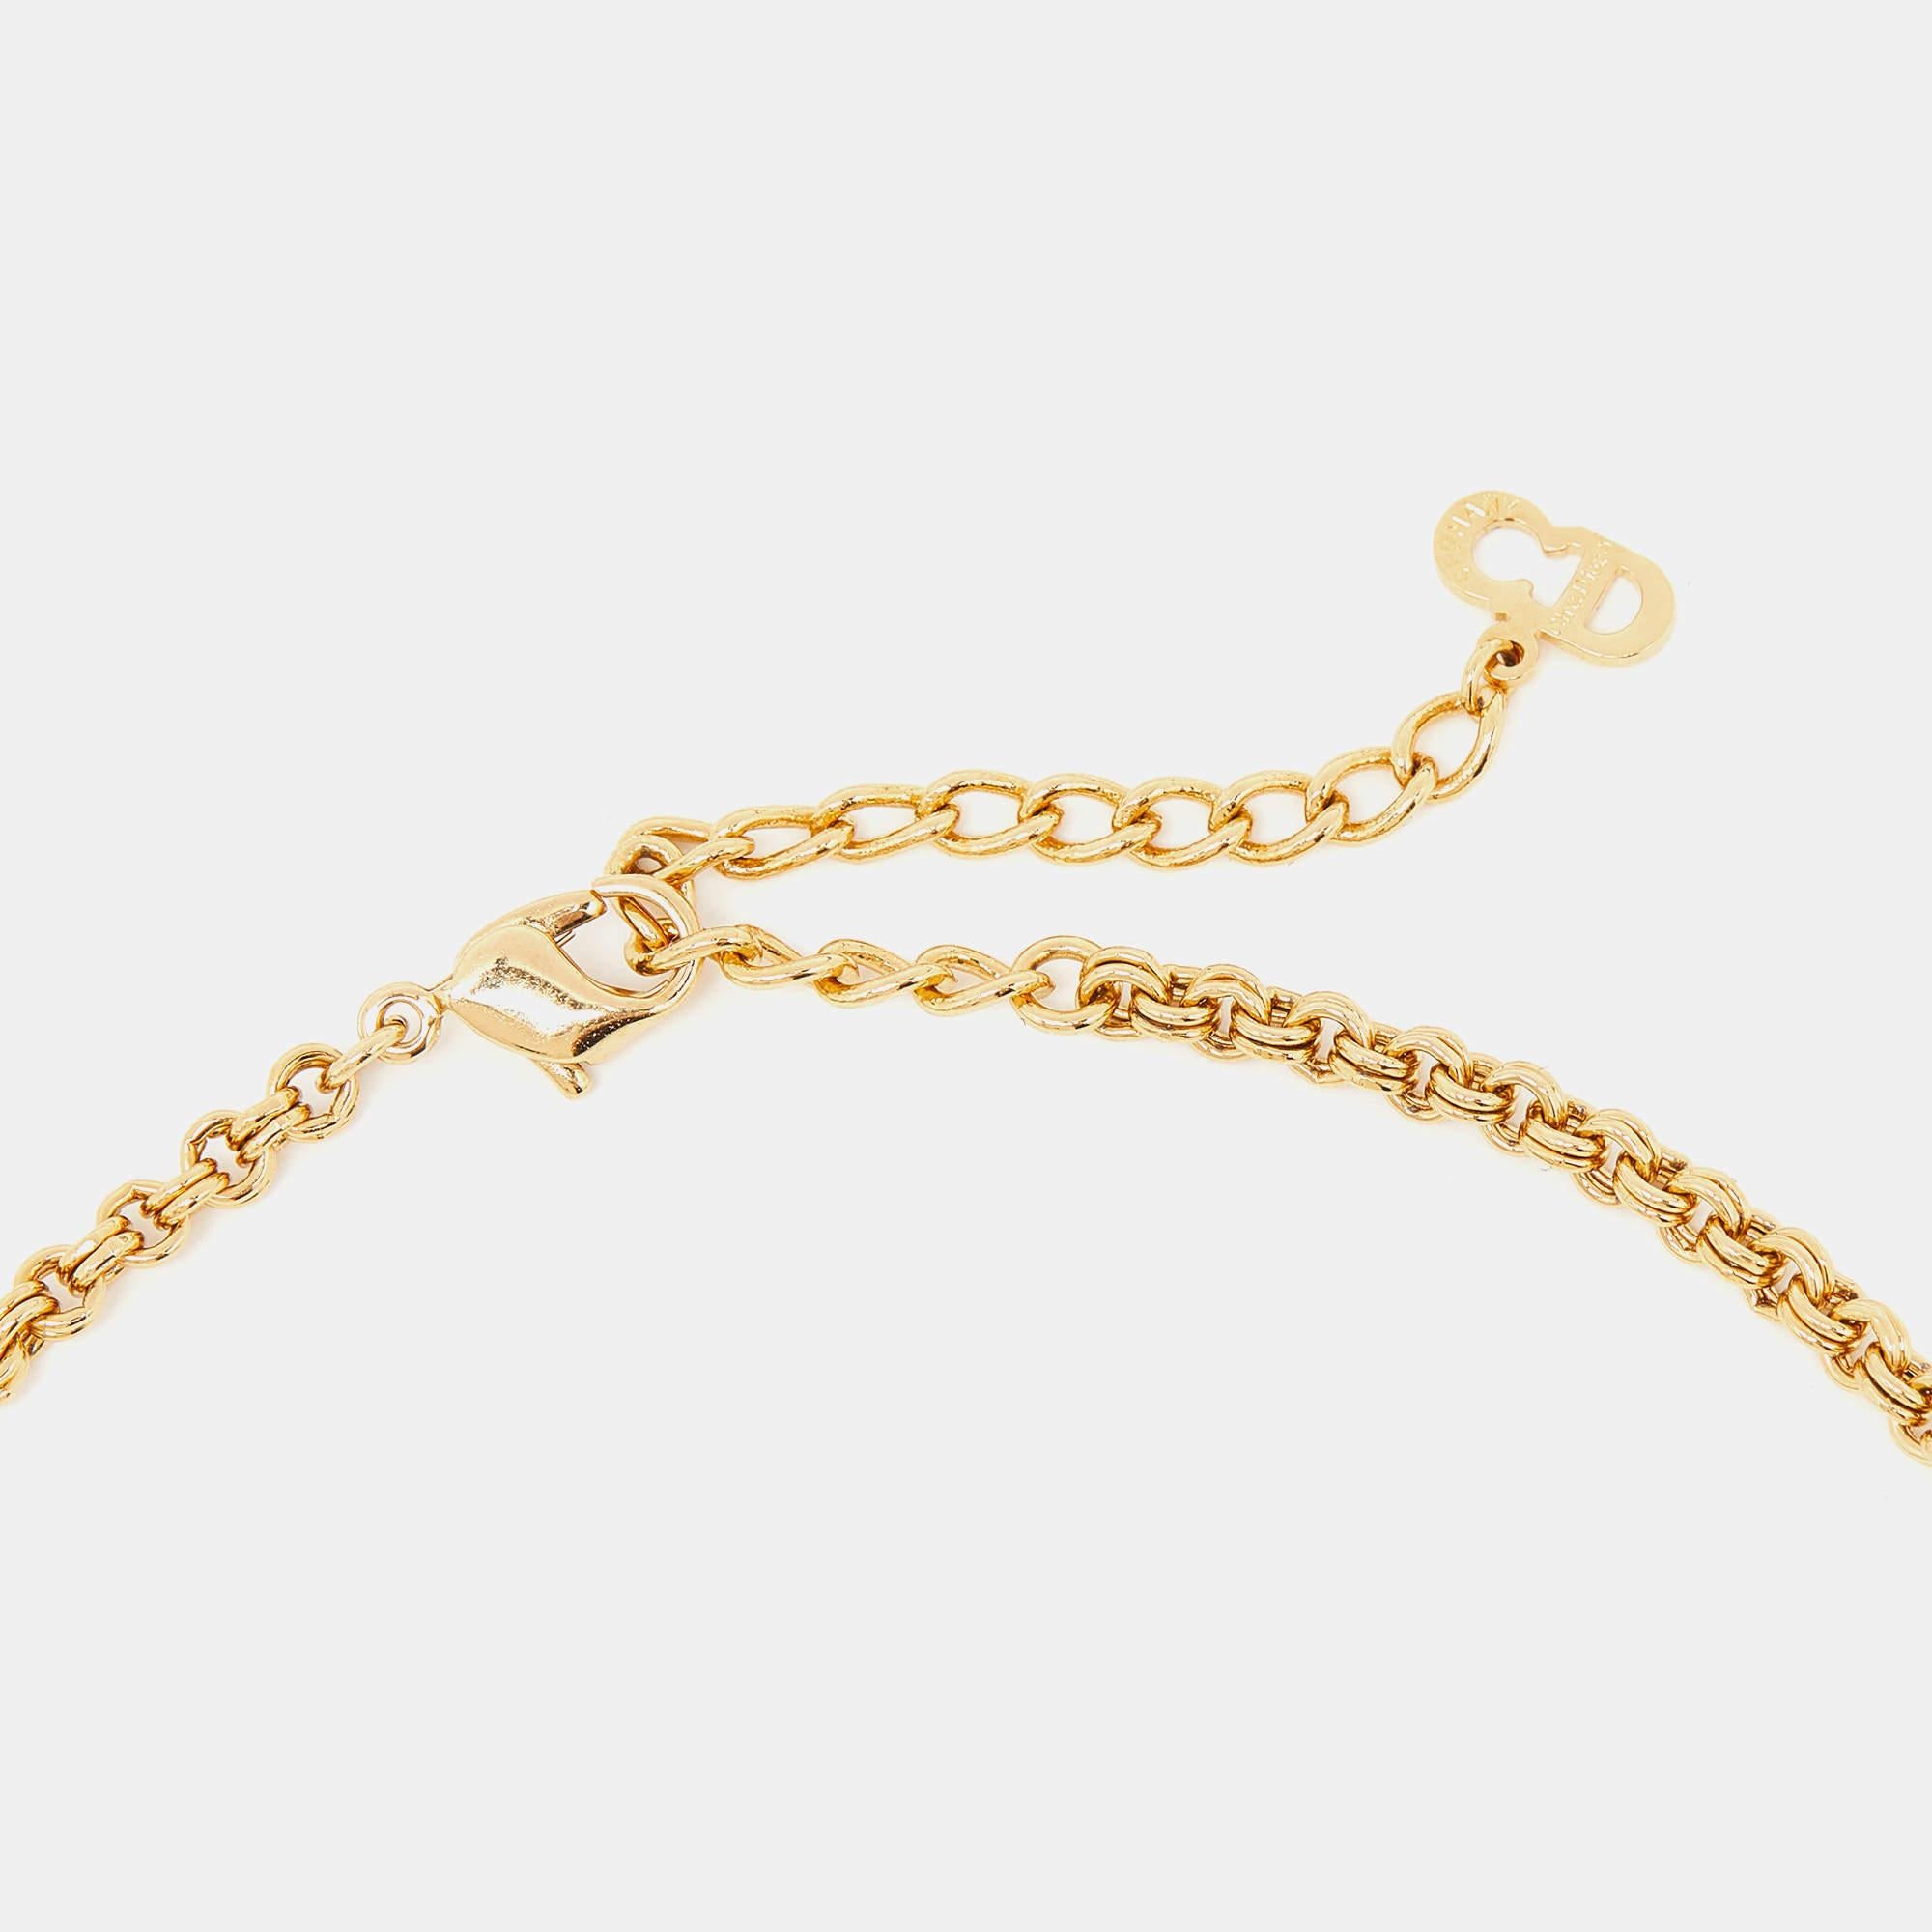 Schmücken Sie sich mit der zeitlosen Eleganz der Vintage-Halskette von Christian Dior. Dieses exquisite, mit viel Liebe zum Detail gefertigte Schmuckstück besteht aus einer glänzenden, goldfarbenen Kette, die mit schillernden Strasssteinen besetzt